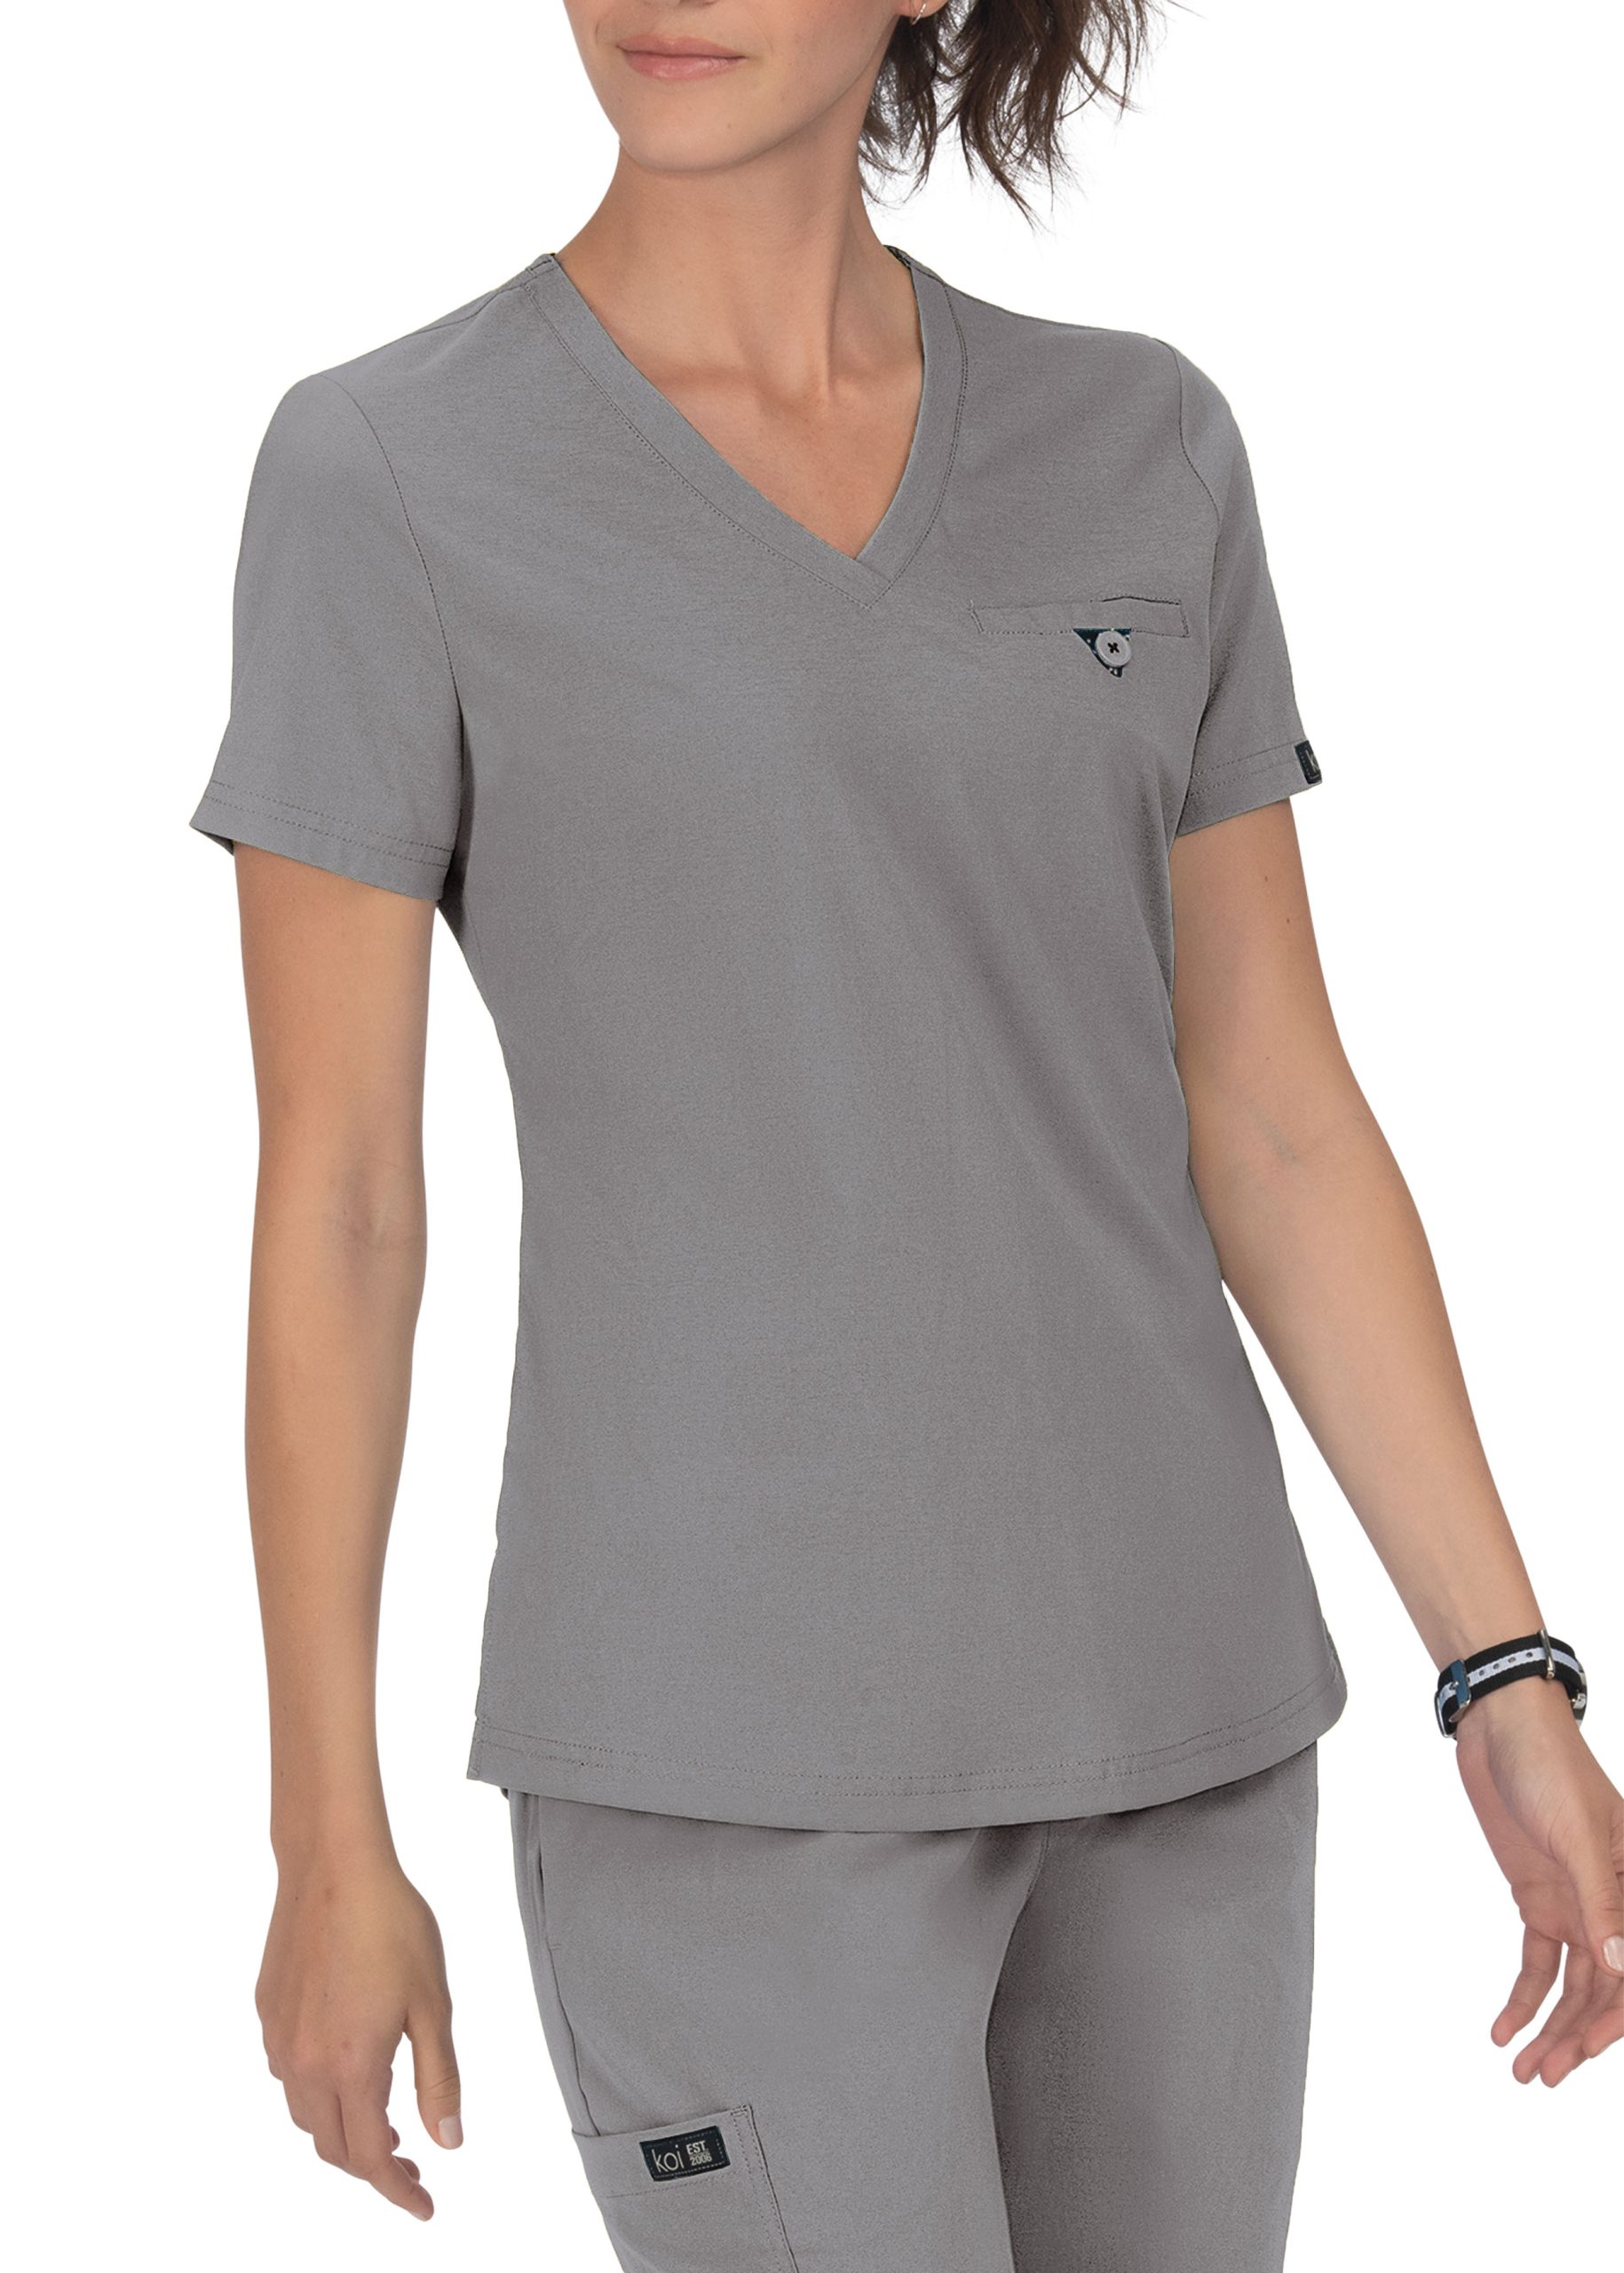  KOI Basics 1011 Kade - Camiseta médica para mujer, Gris  jaspeado : Ropa, Zapatos y Joyería